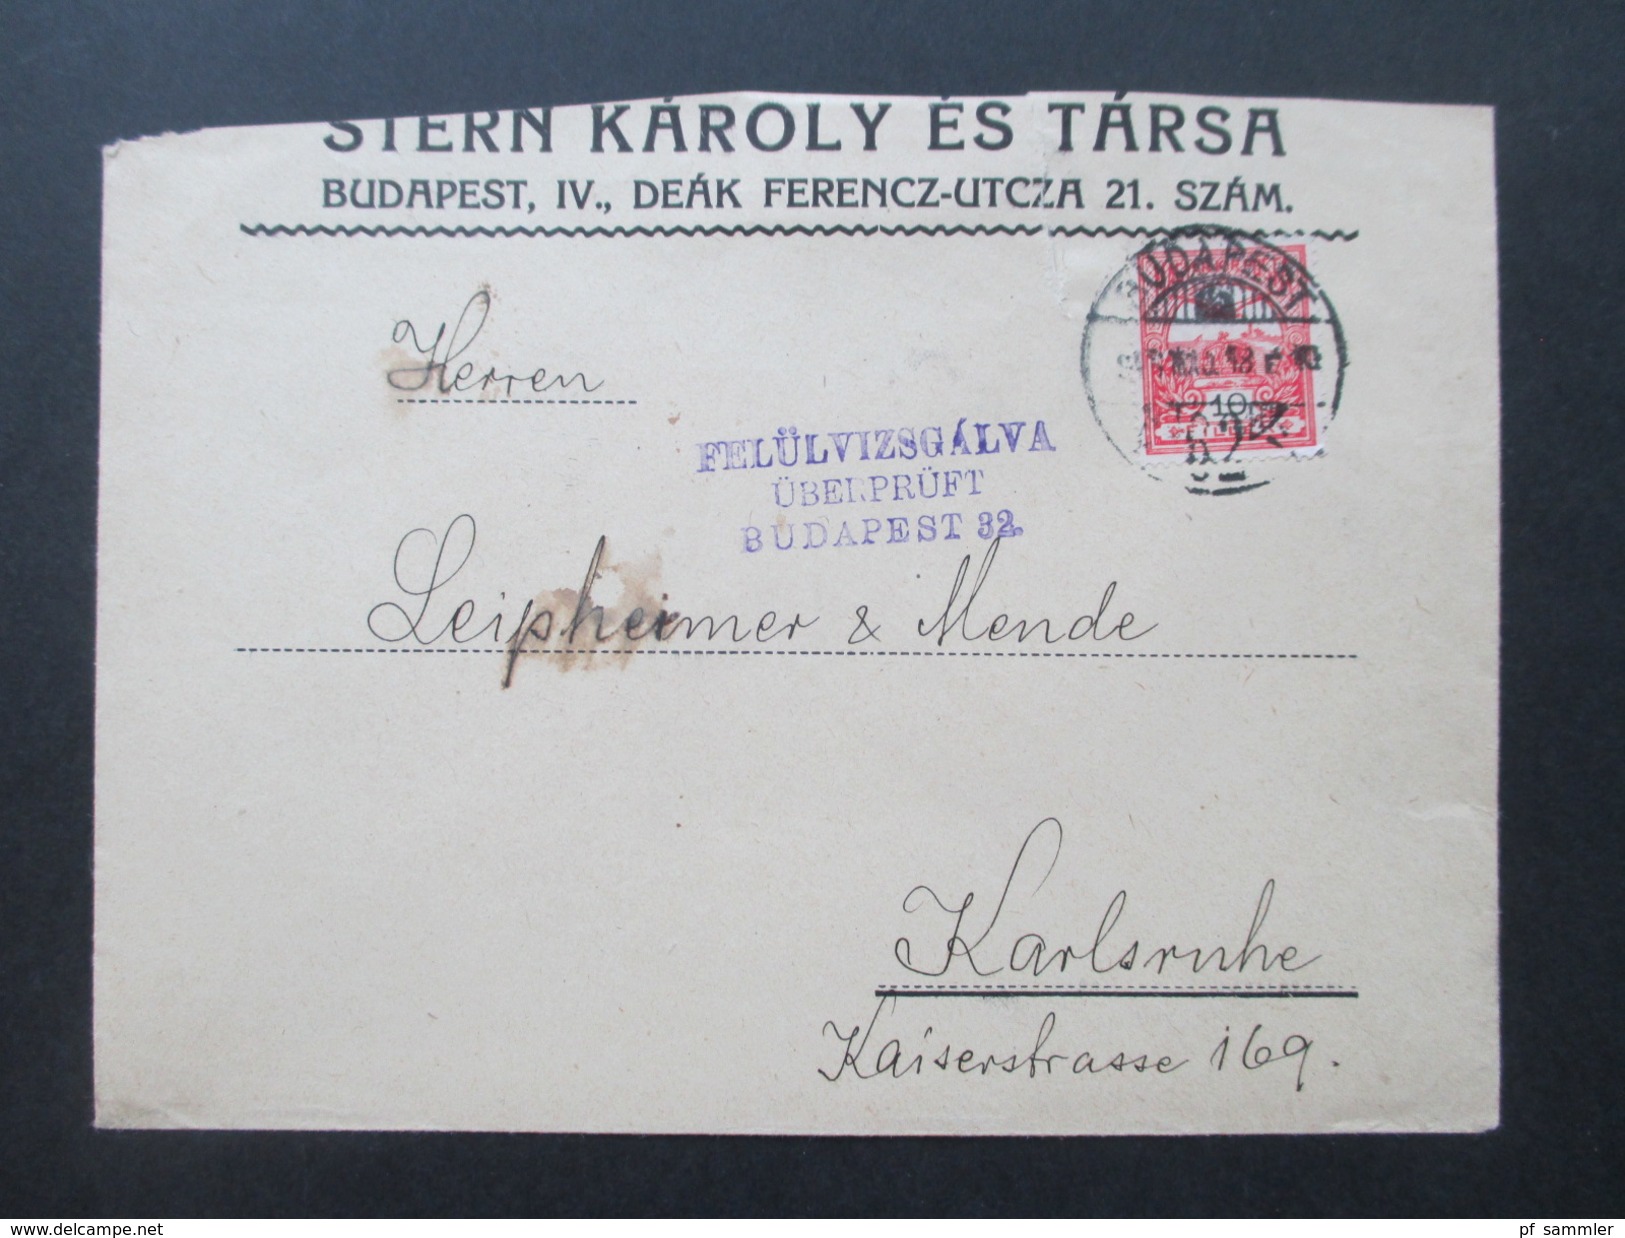 Ungarn 1918 Beleg / Zensutbeleg. Felülvizsgalva überprüft Budapest 32. Nach Karlsruhe. - Cartas & Documentos